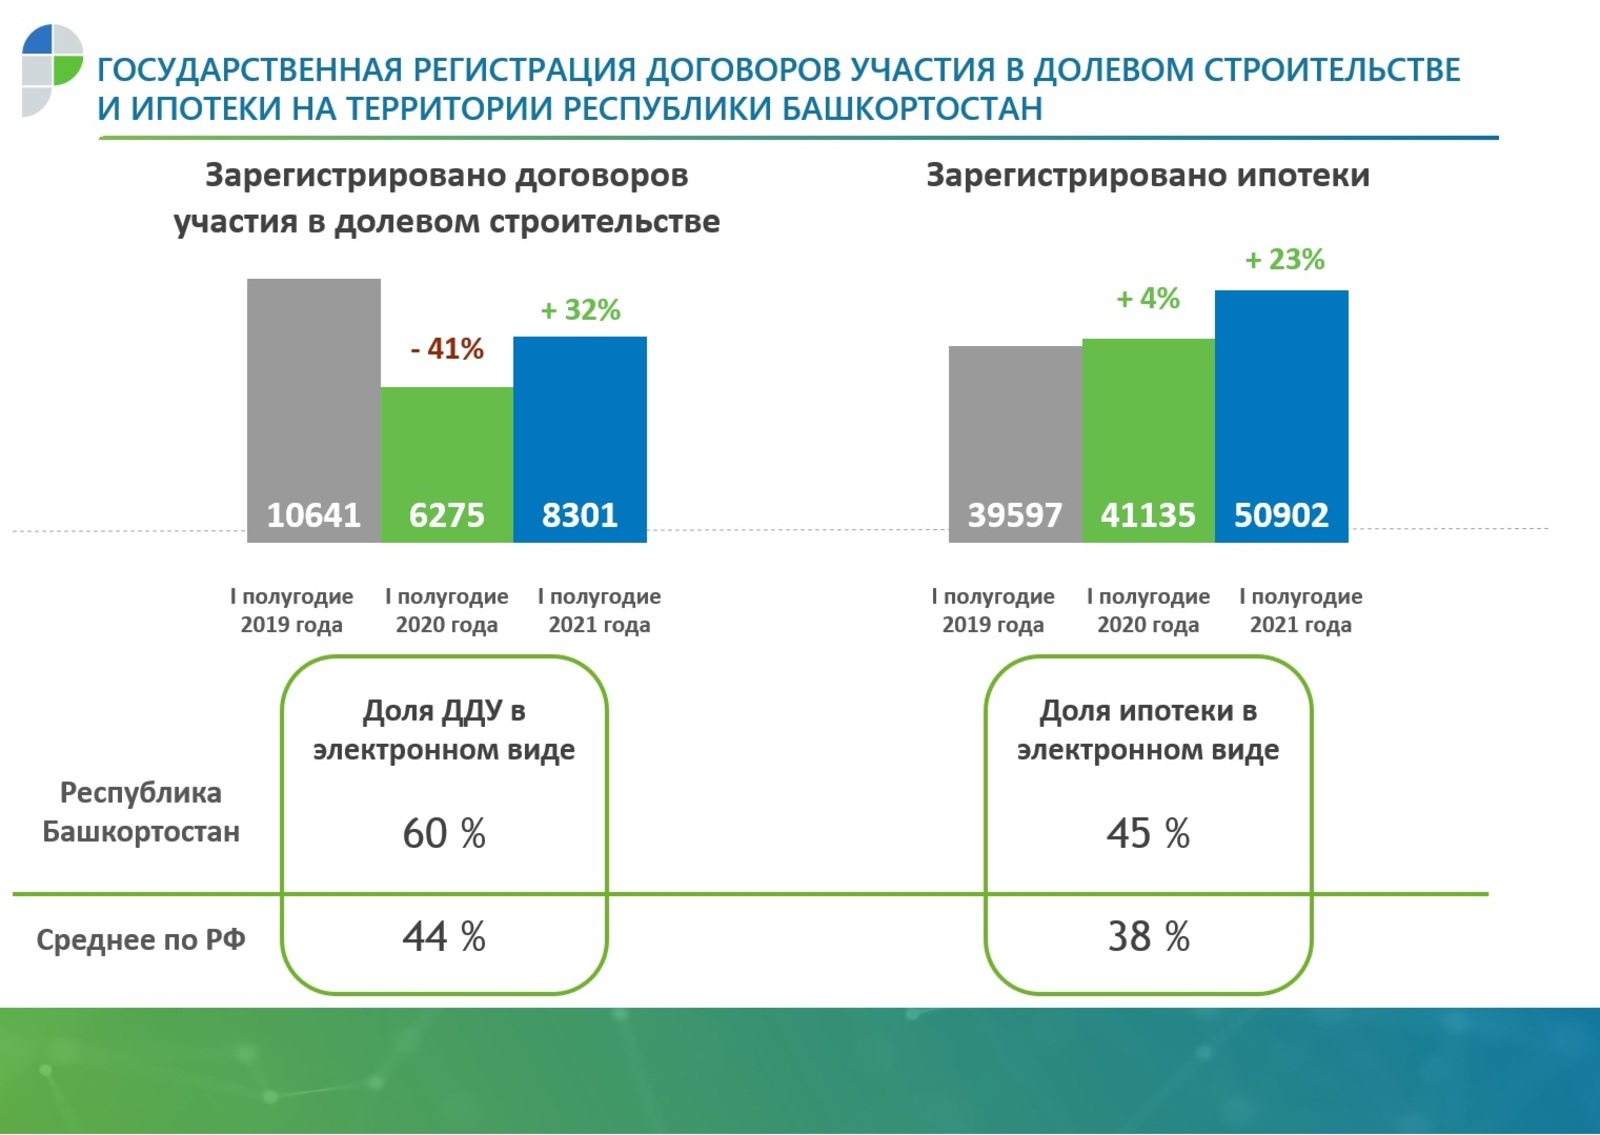 В Башкортостане 60% заявлений о покупке жилья в новостройках подаются в электронном виде